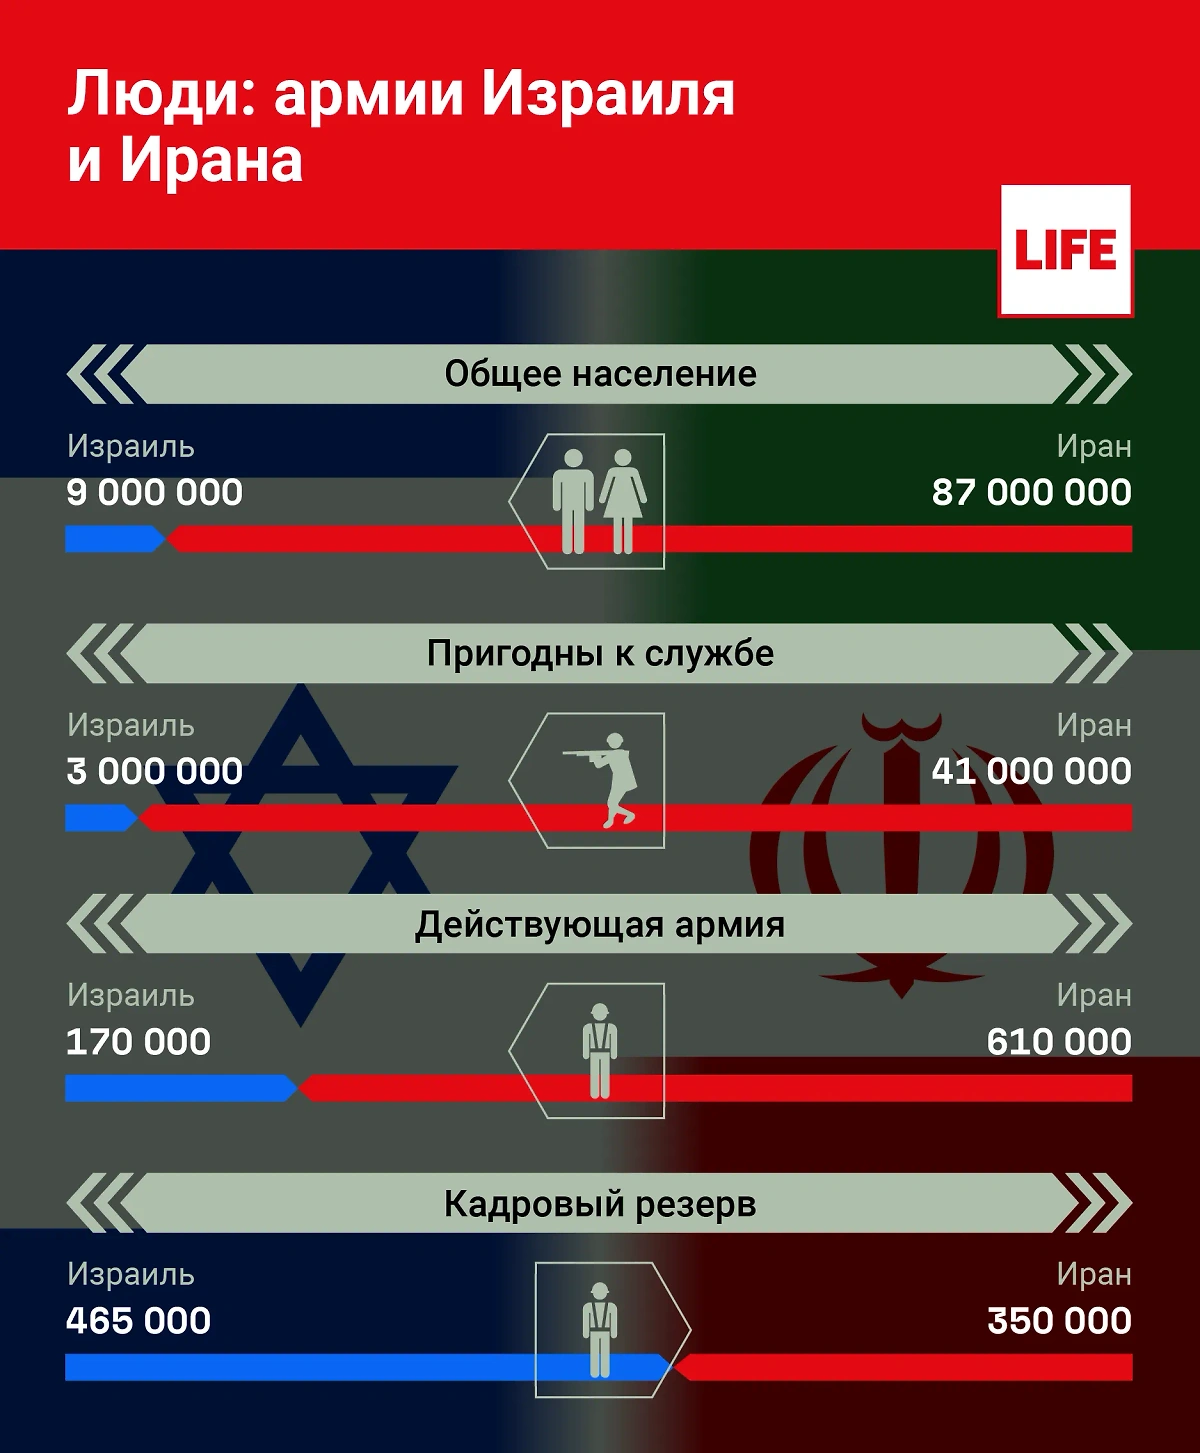 Сравнение населения и кадрового резерва армий Израиля и Ирана. Инфографика © Life.ru